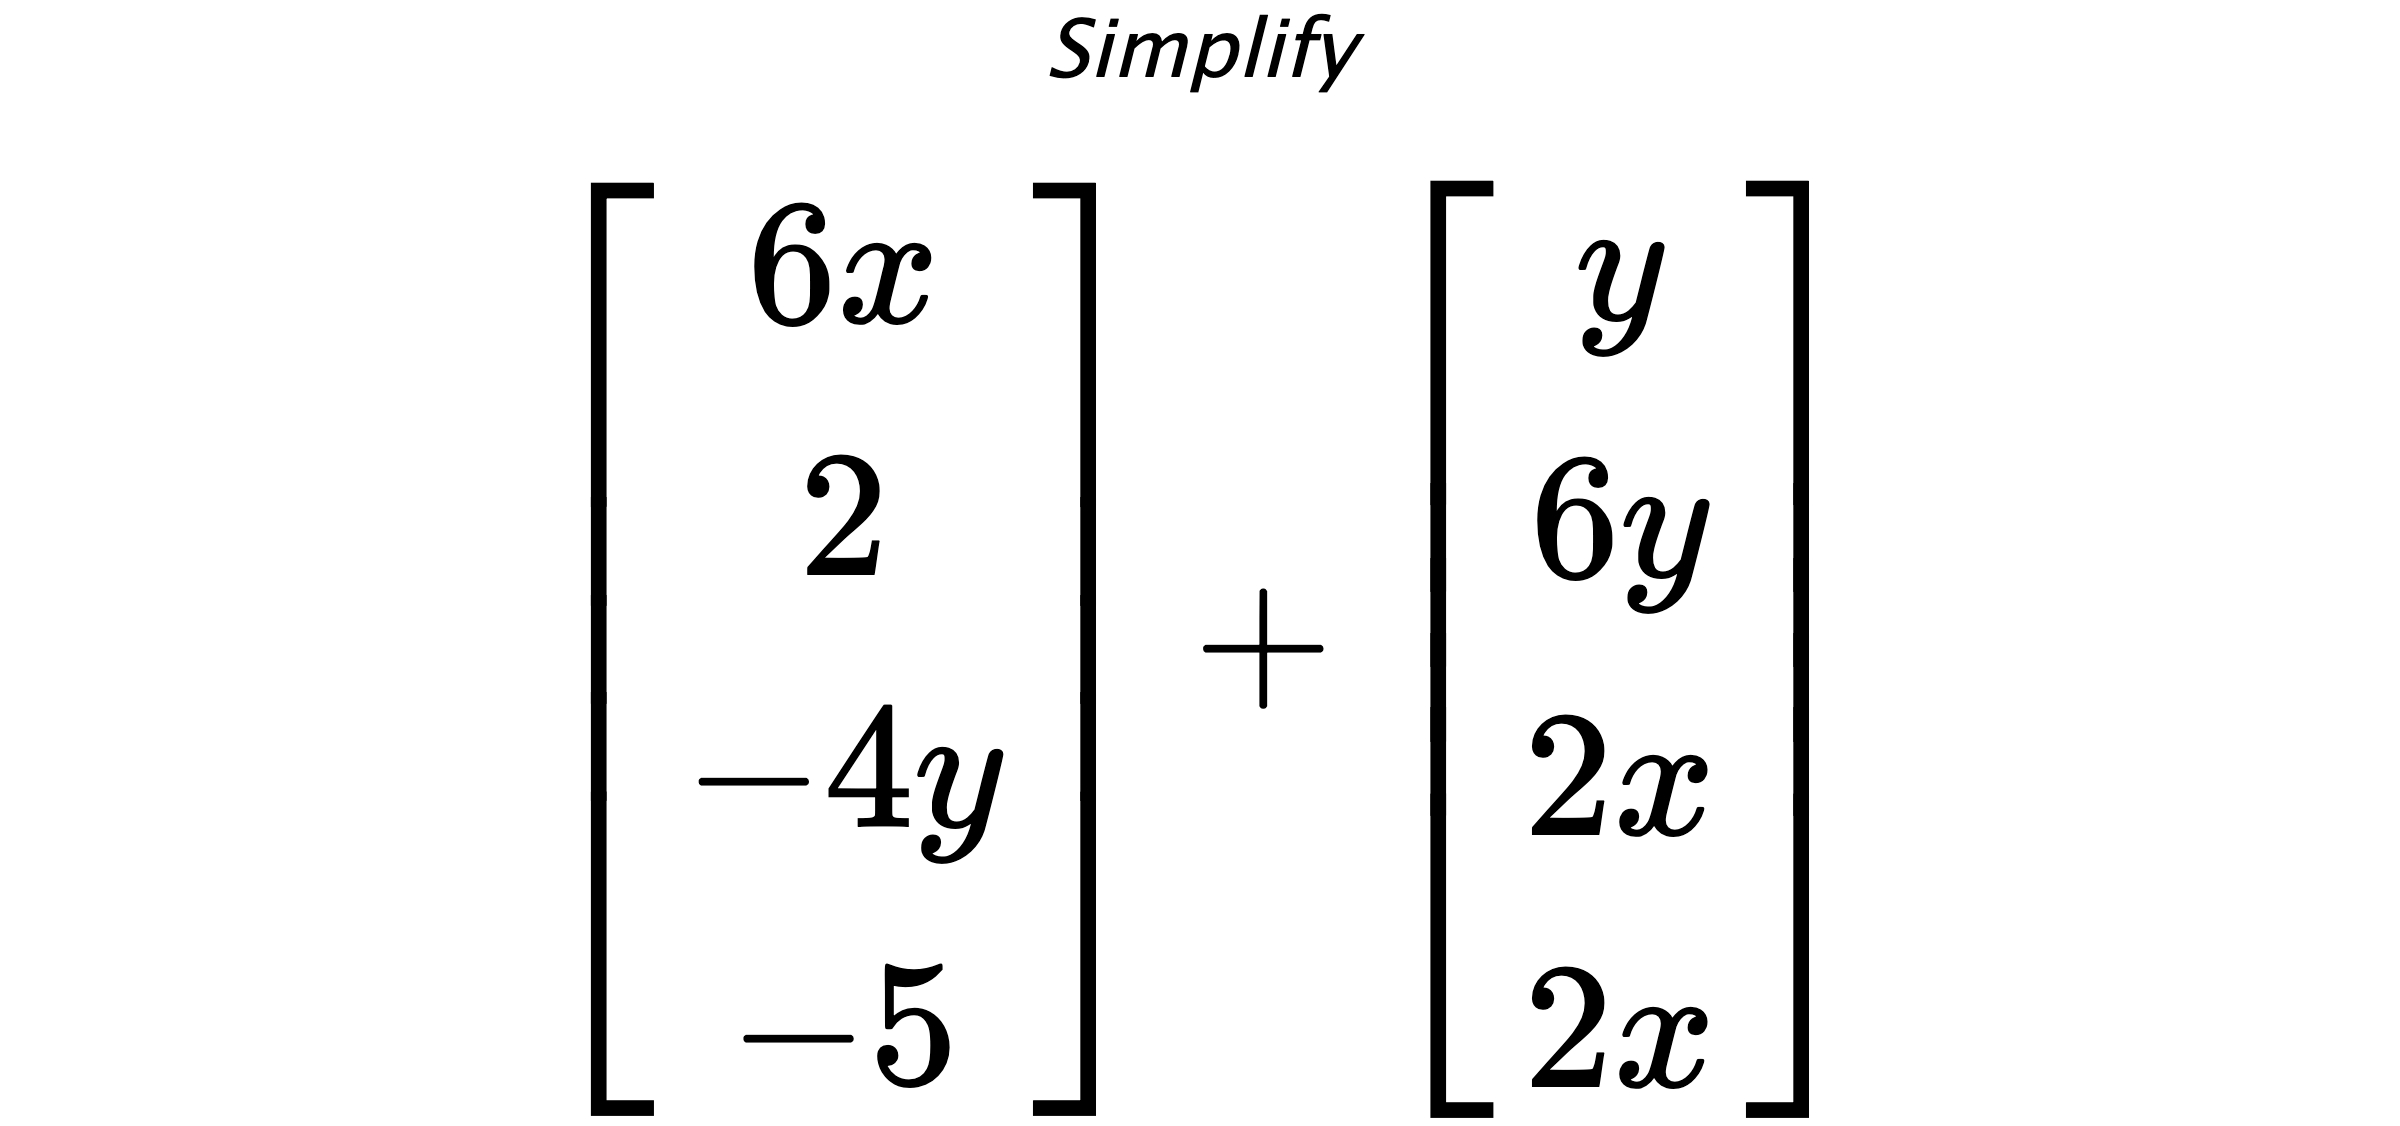 Simplify $ \begin{bmatrix} 6x \\ 2 \\ -4y \\ -5 \end{bmatrix} + \begin{bmatrix} y \\ 6y \\ 2x \\ 2x \end{bmatrix} $